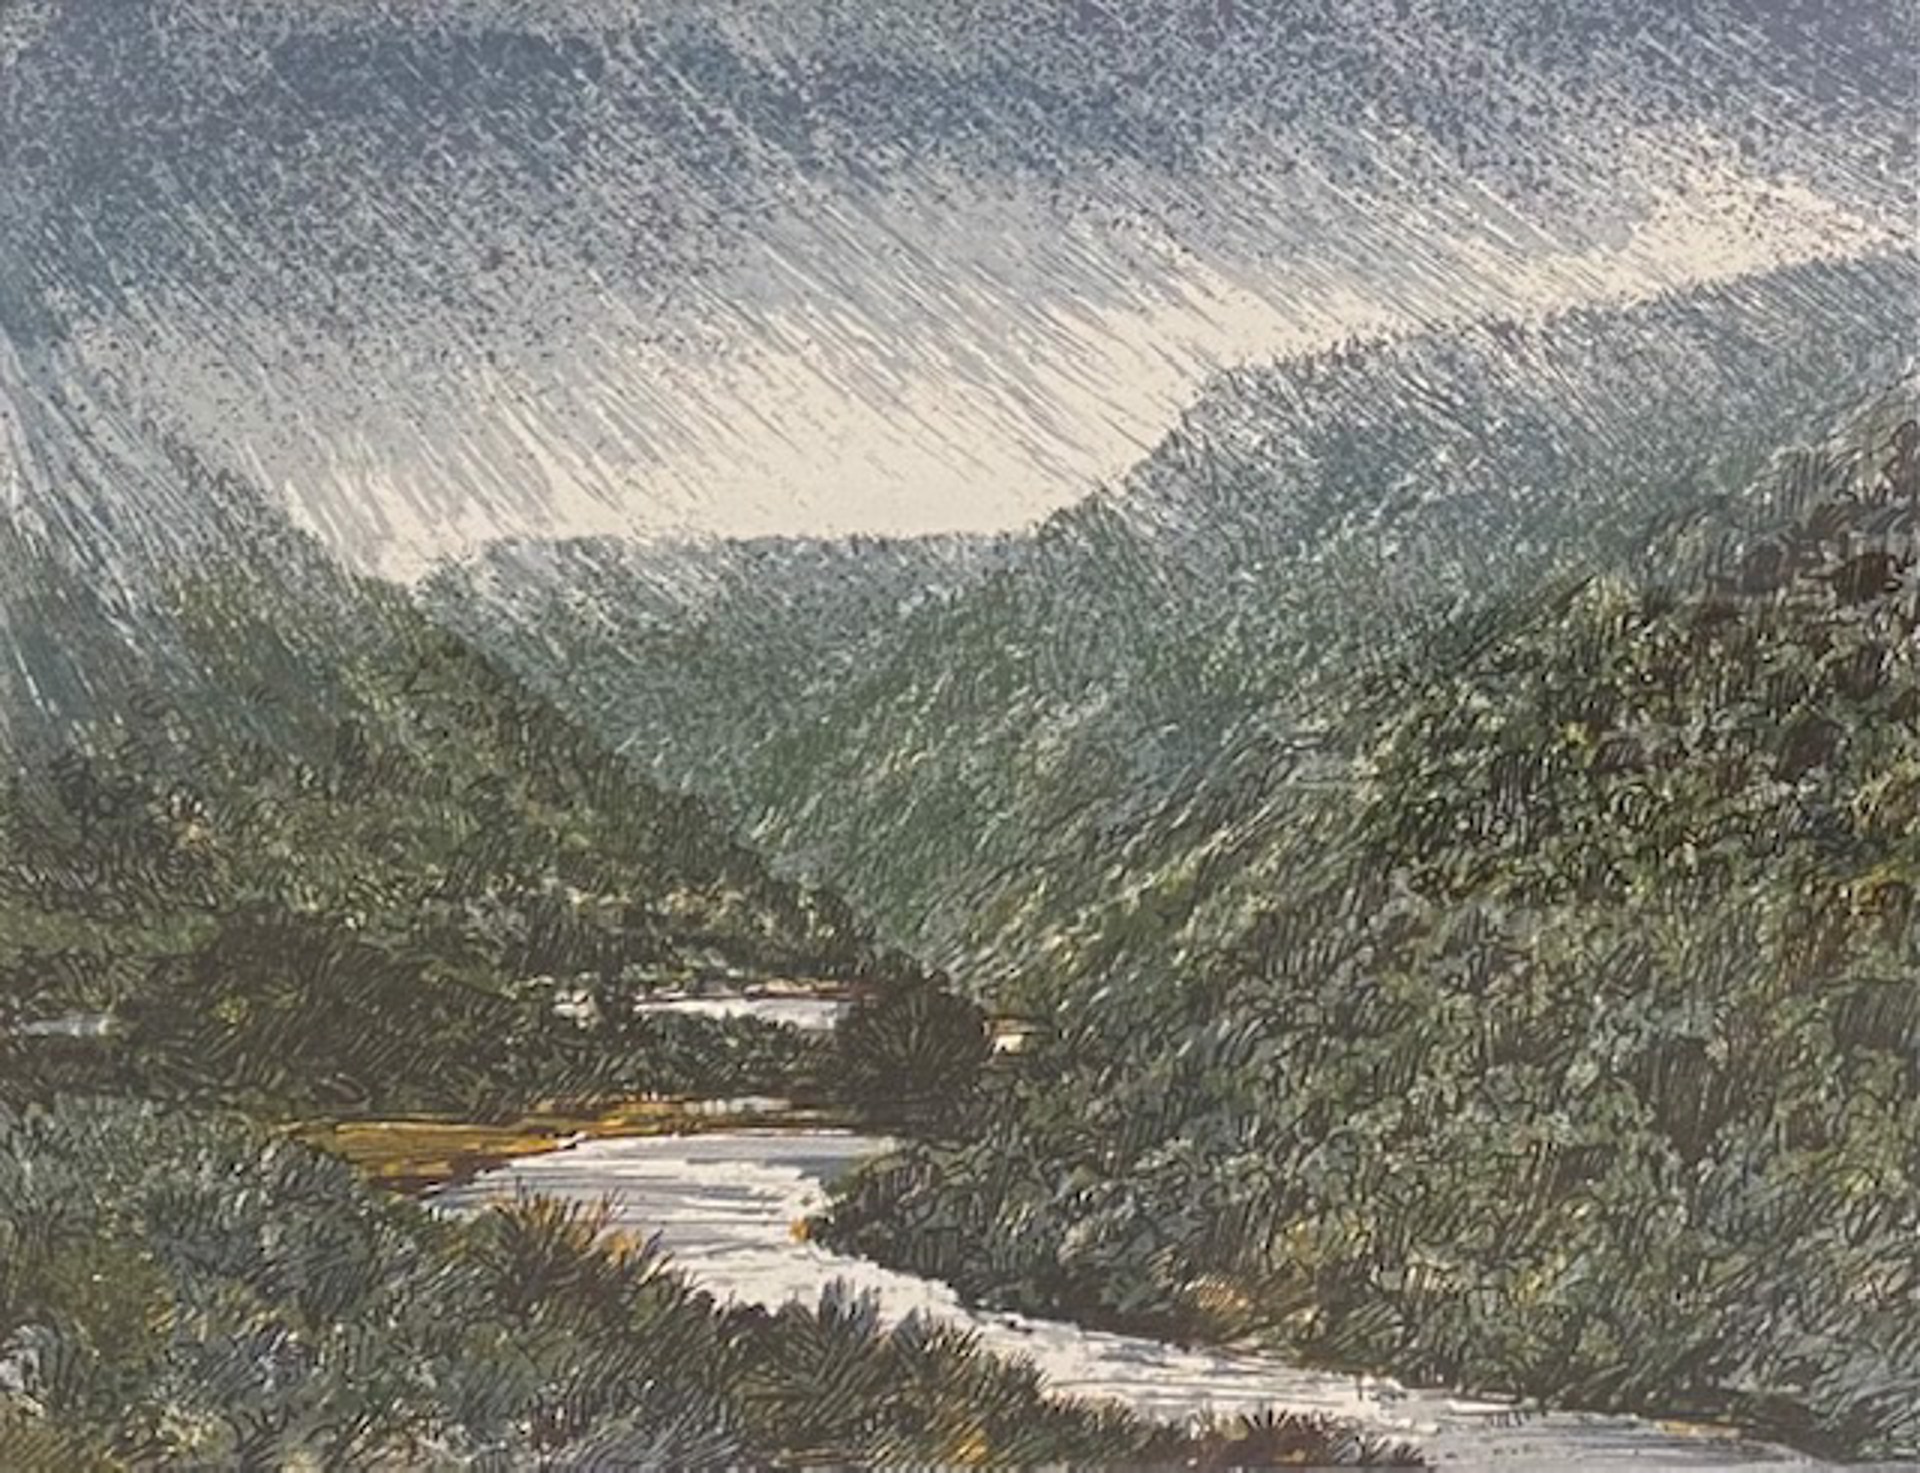 Sullen River Gorge by Leon Loughridge